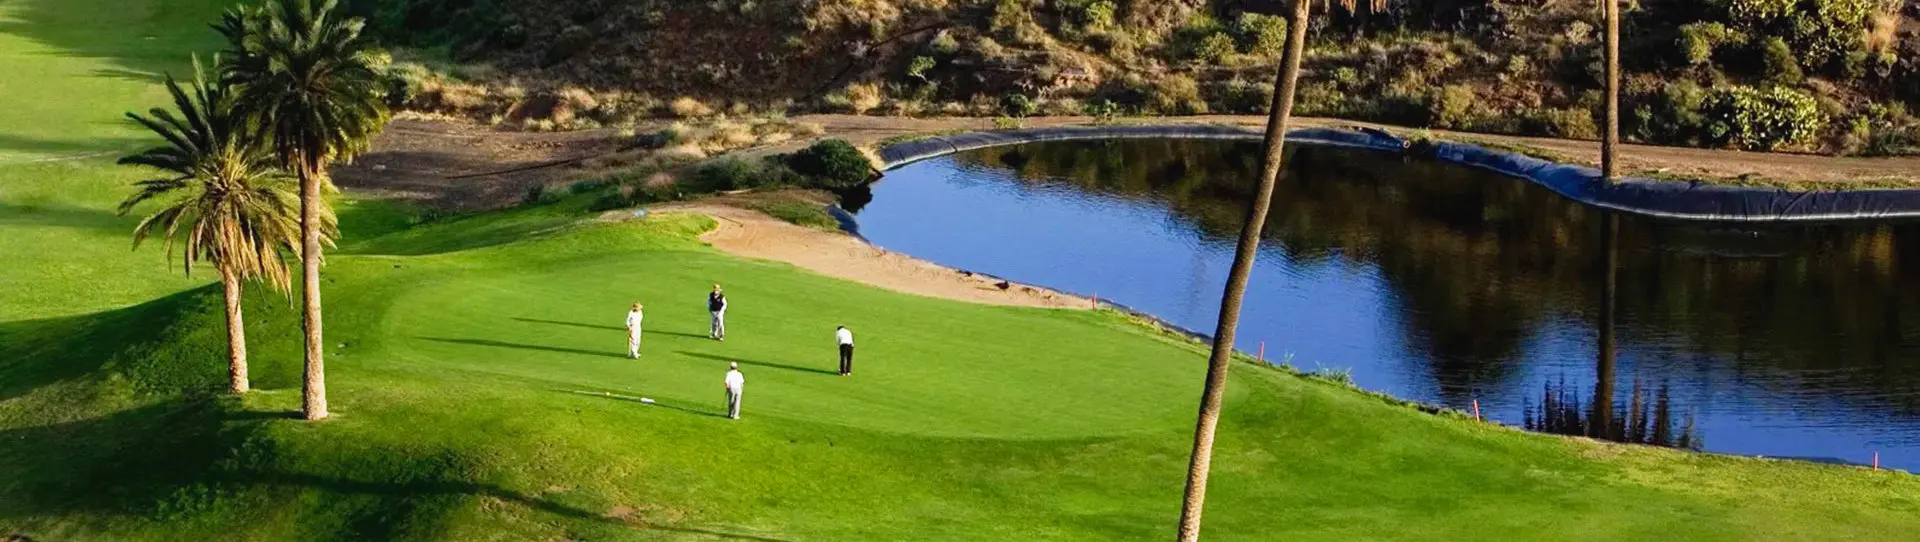 Spain golf courses - El Cortijo Club de Campo - Photo 1